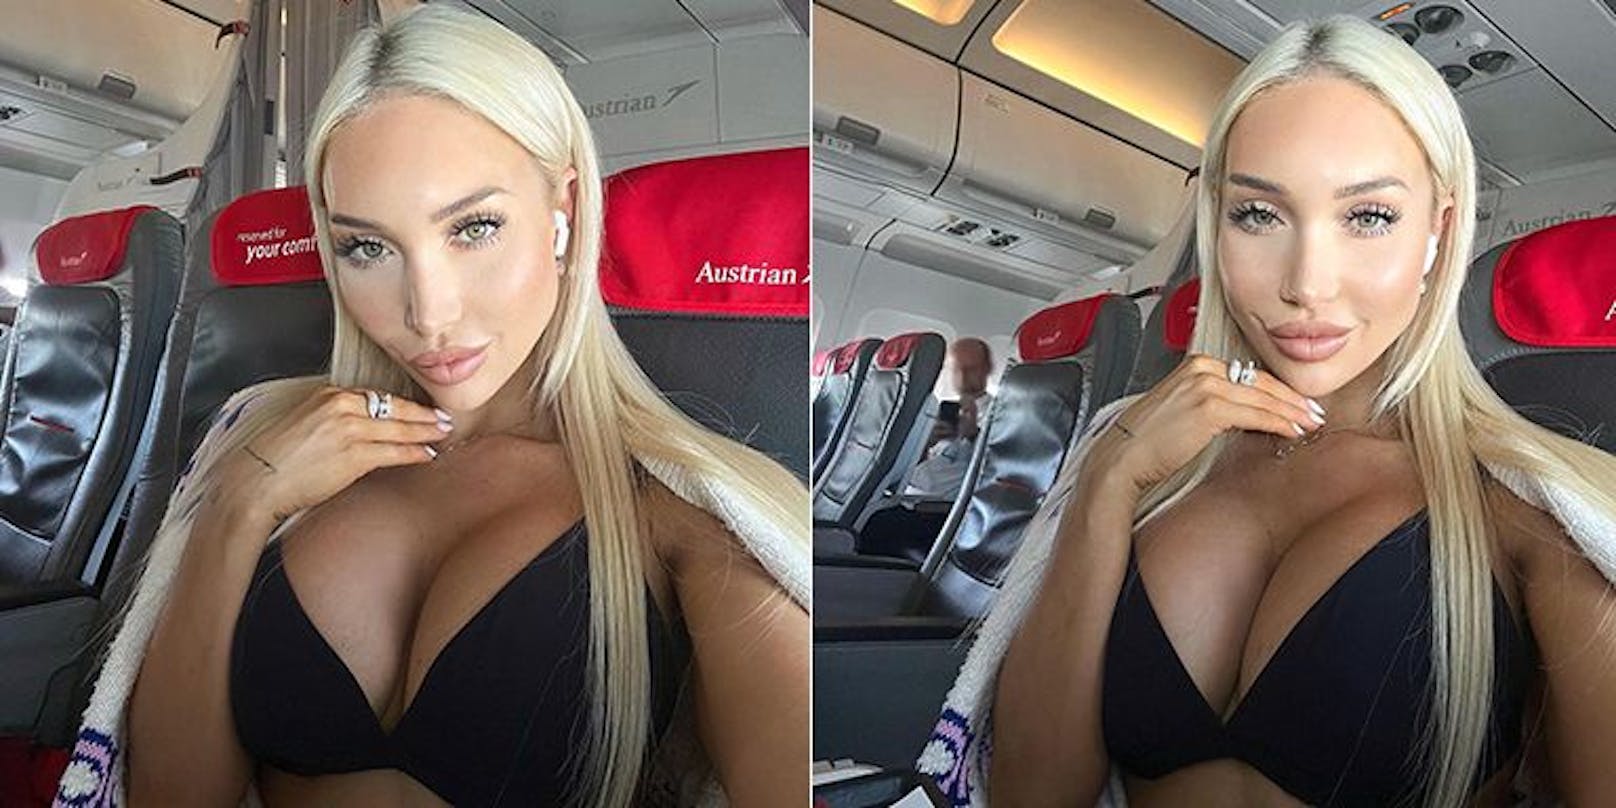 Das Wiener Playboy-Model Conny Hawk machte in der Business Class der Austrian Airlines ein paar heiße Aufnahmen von sich. Als sie die Fotos genauer unter die Lupe nahm, bemerkte sie einen Mann im Hintergrund, der heimlich Bilder von ihr machte.